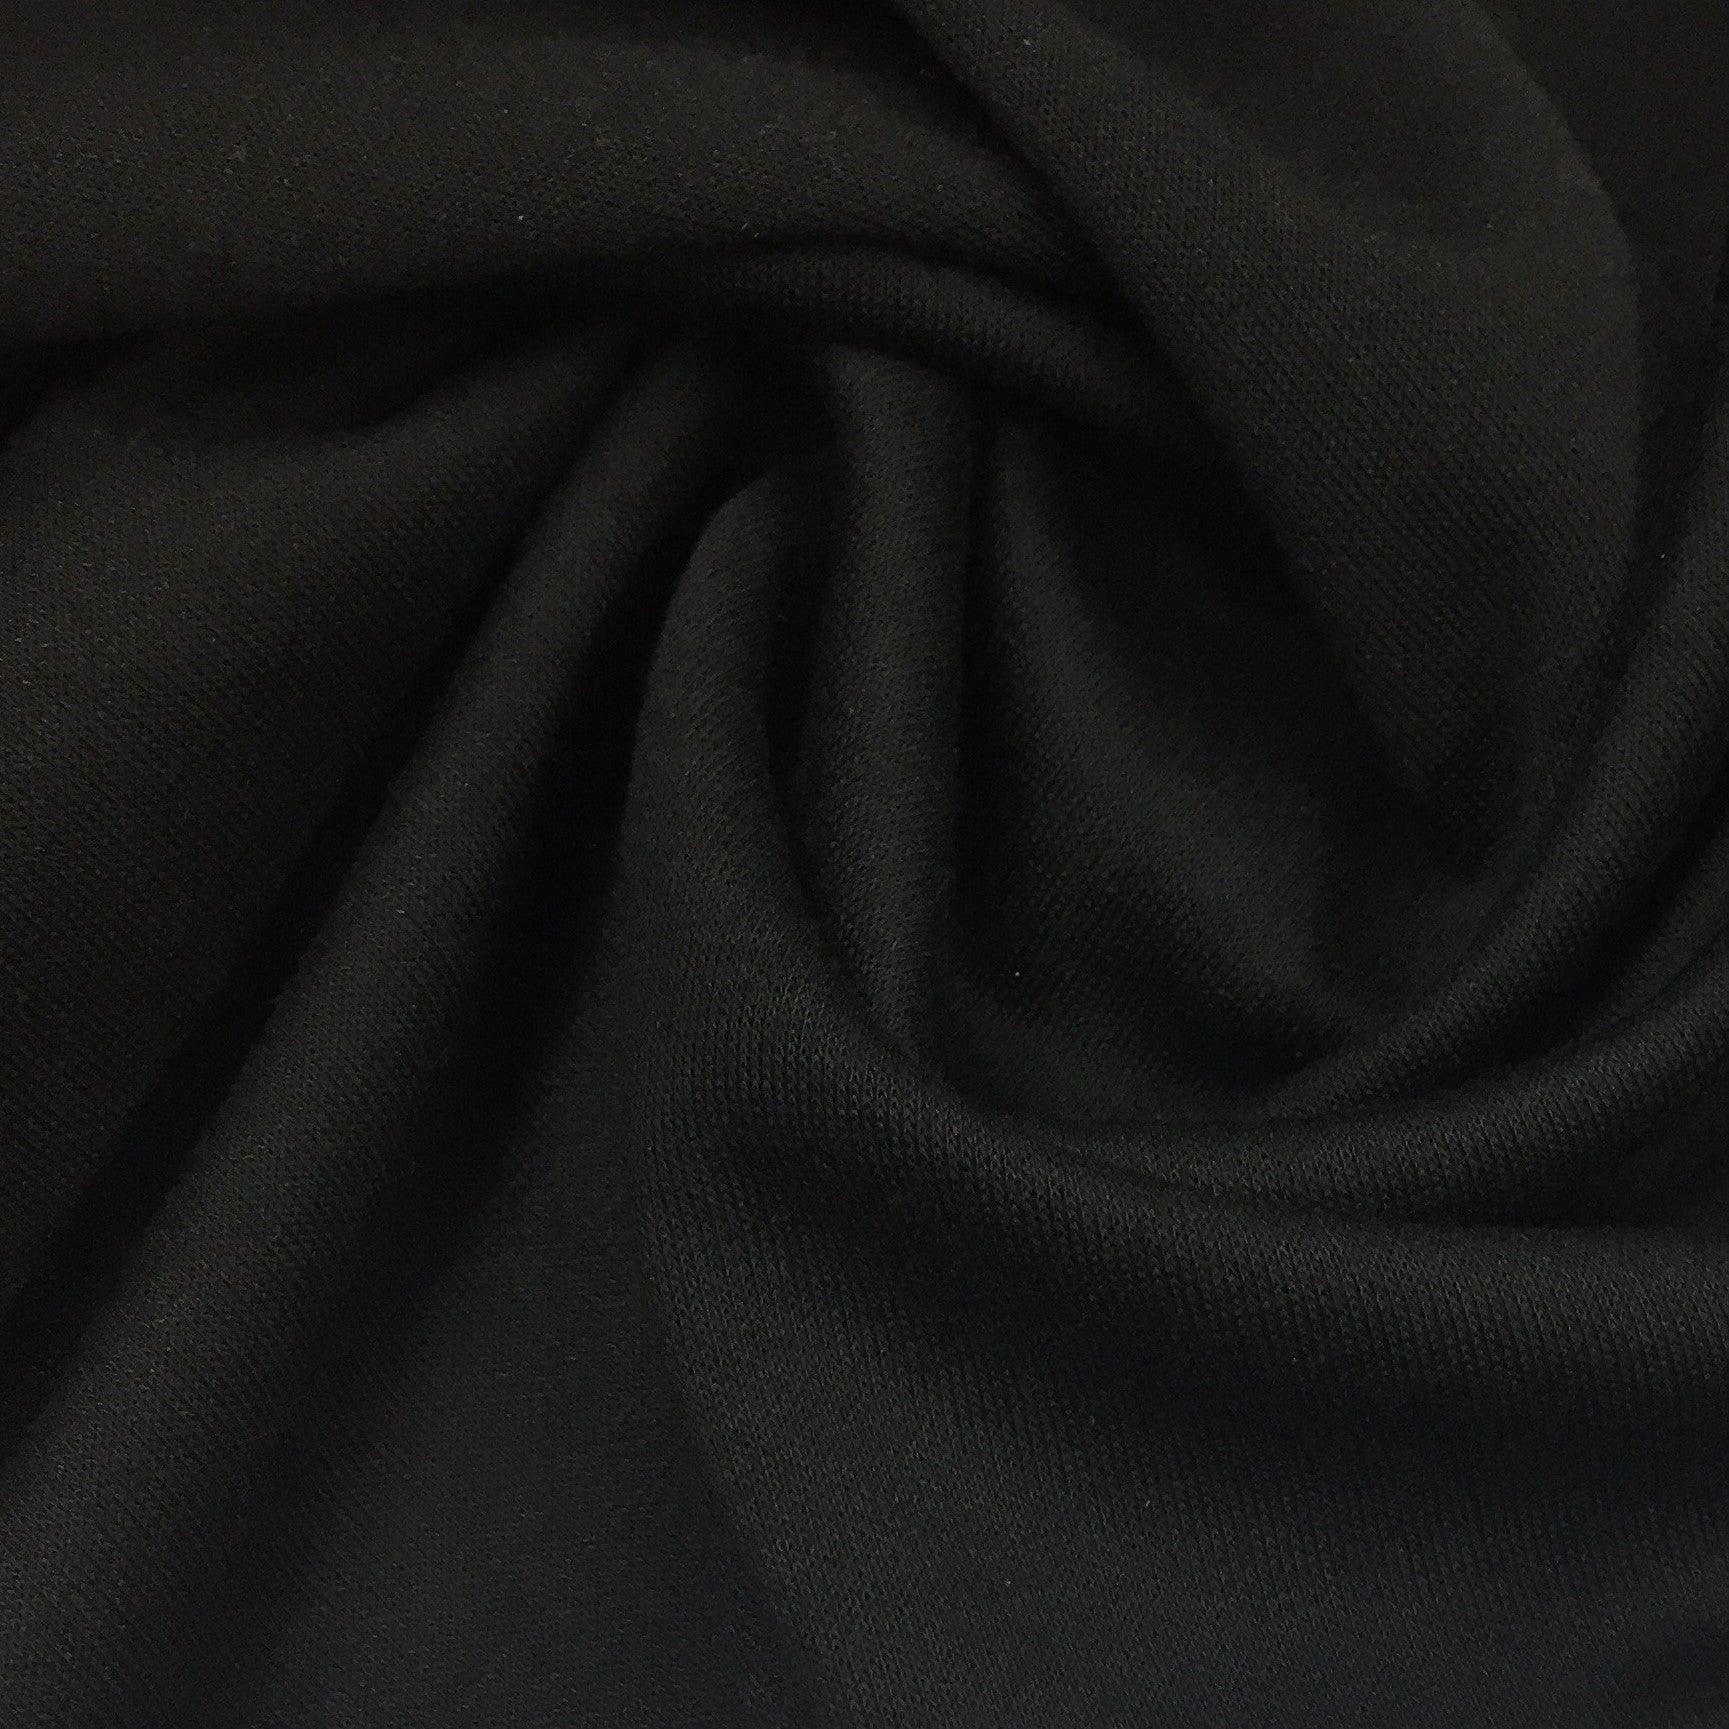 Black on Black Double-Sided  Merino Wool Jersey